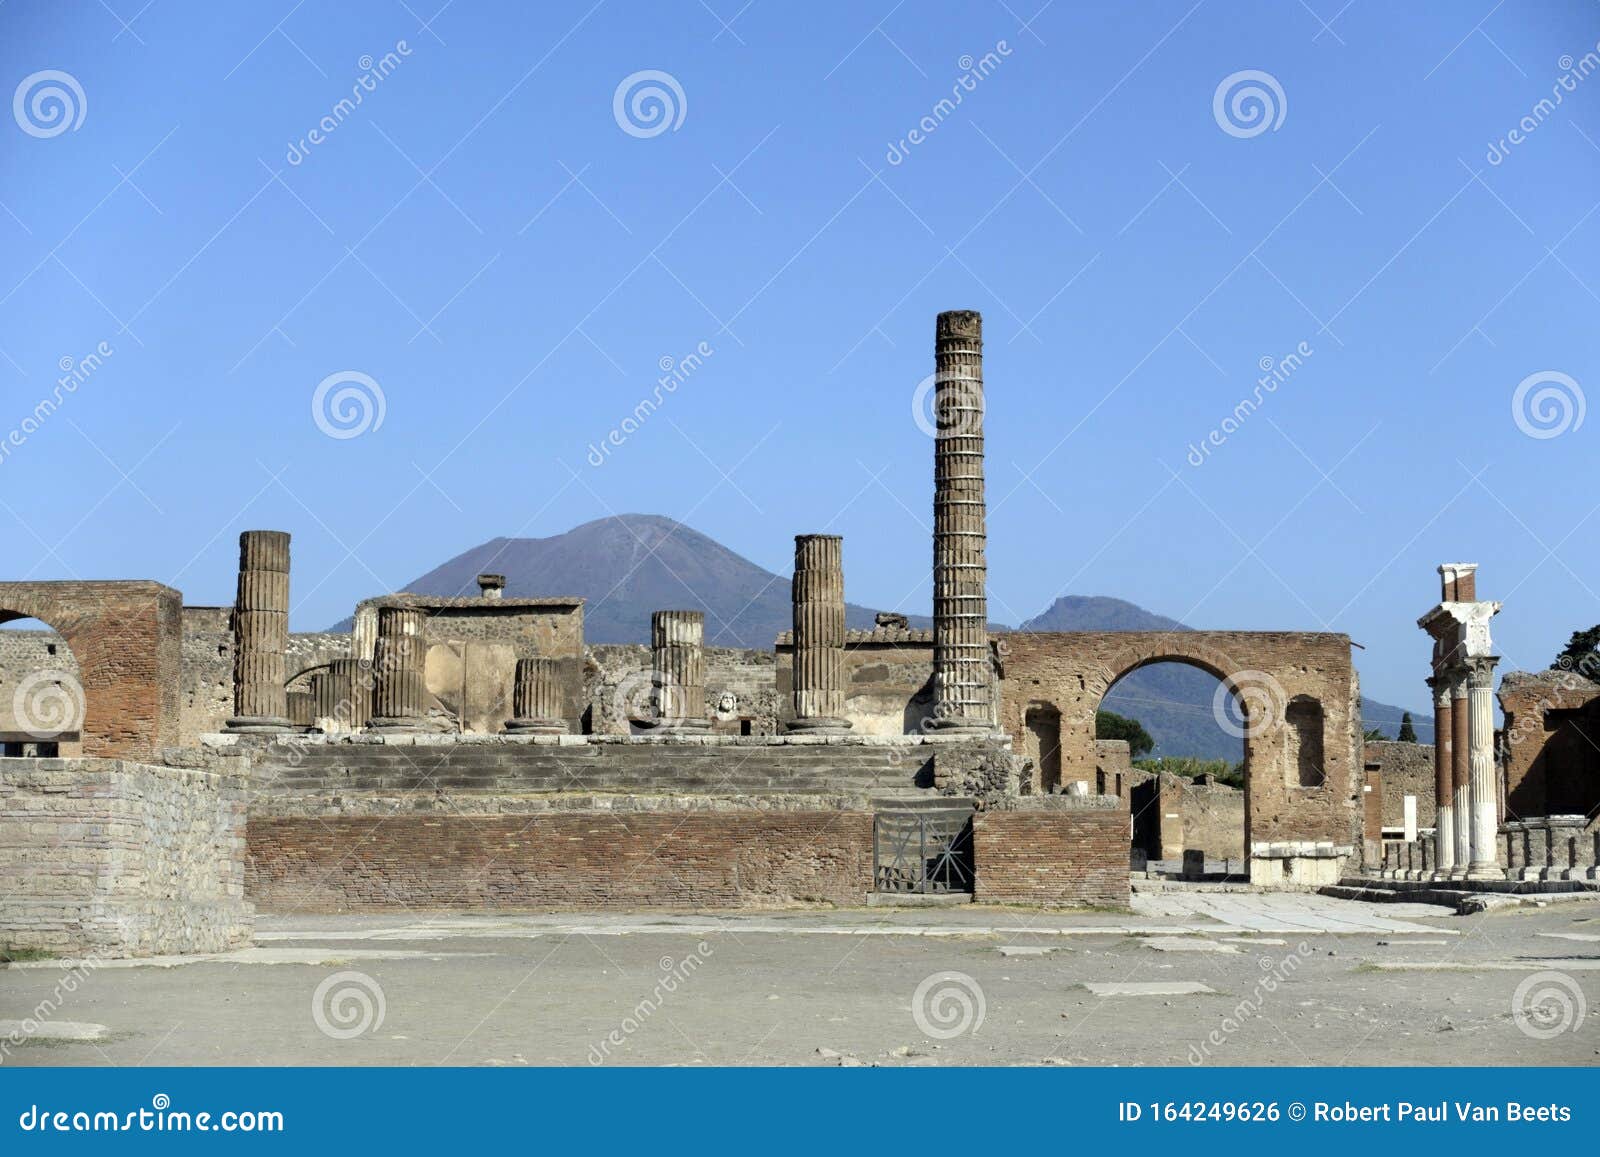 tempio di giove, pompeii